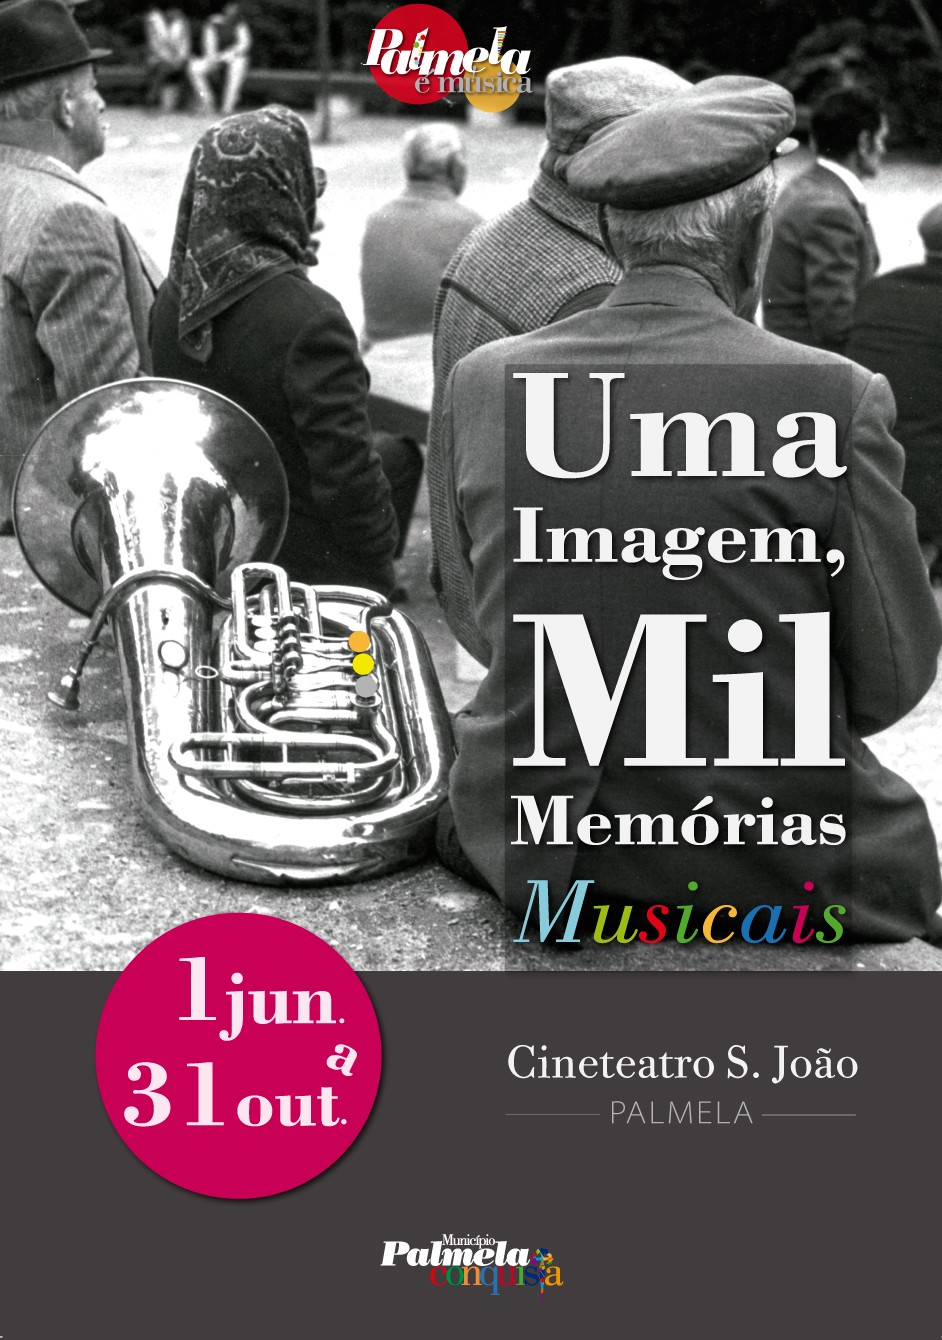 Visite a exposição "Uma Imagem, Mil Memórias Musicais"